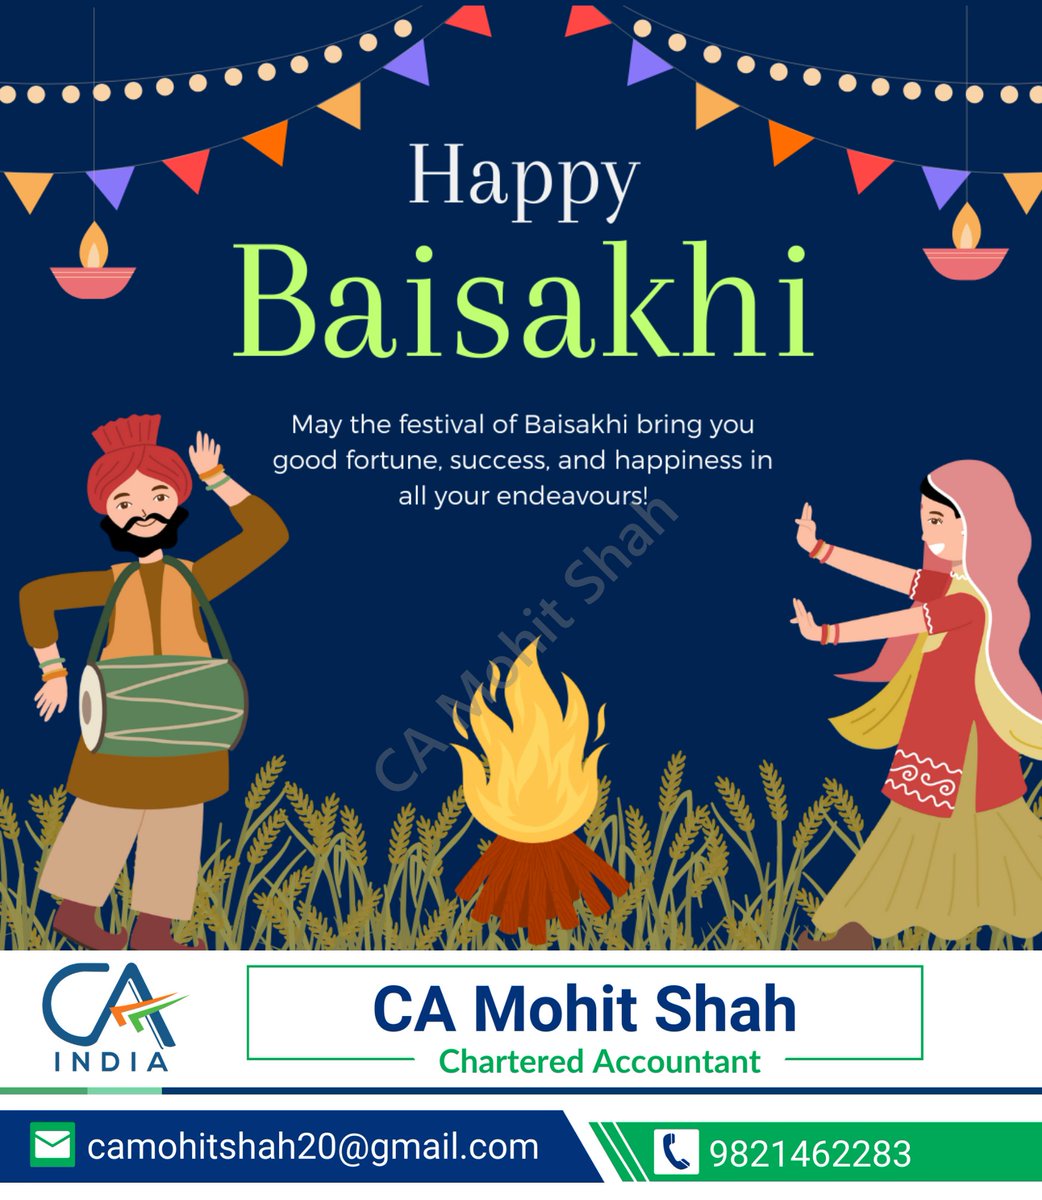 Happy Baisakhi to all celebrating! May this festival bring joy, prosperity, and new beginnings. 

#Baisakhi #Vaisakhi #SikhFestival #HarvestFestival #PunjabiCulture #BaisakhiCelebration #Bhangra #FestivalOfJoy #CulturalHeritage #Baisakhi2024